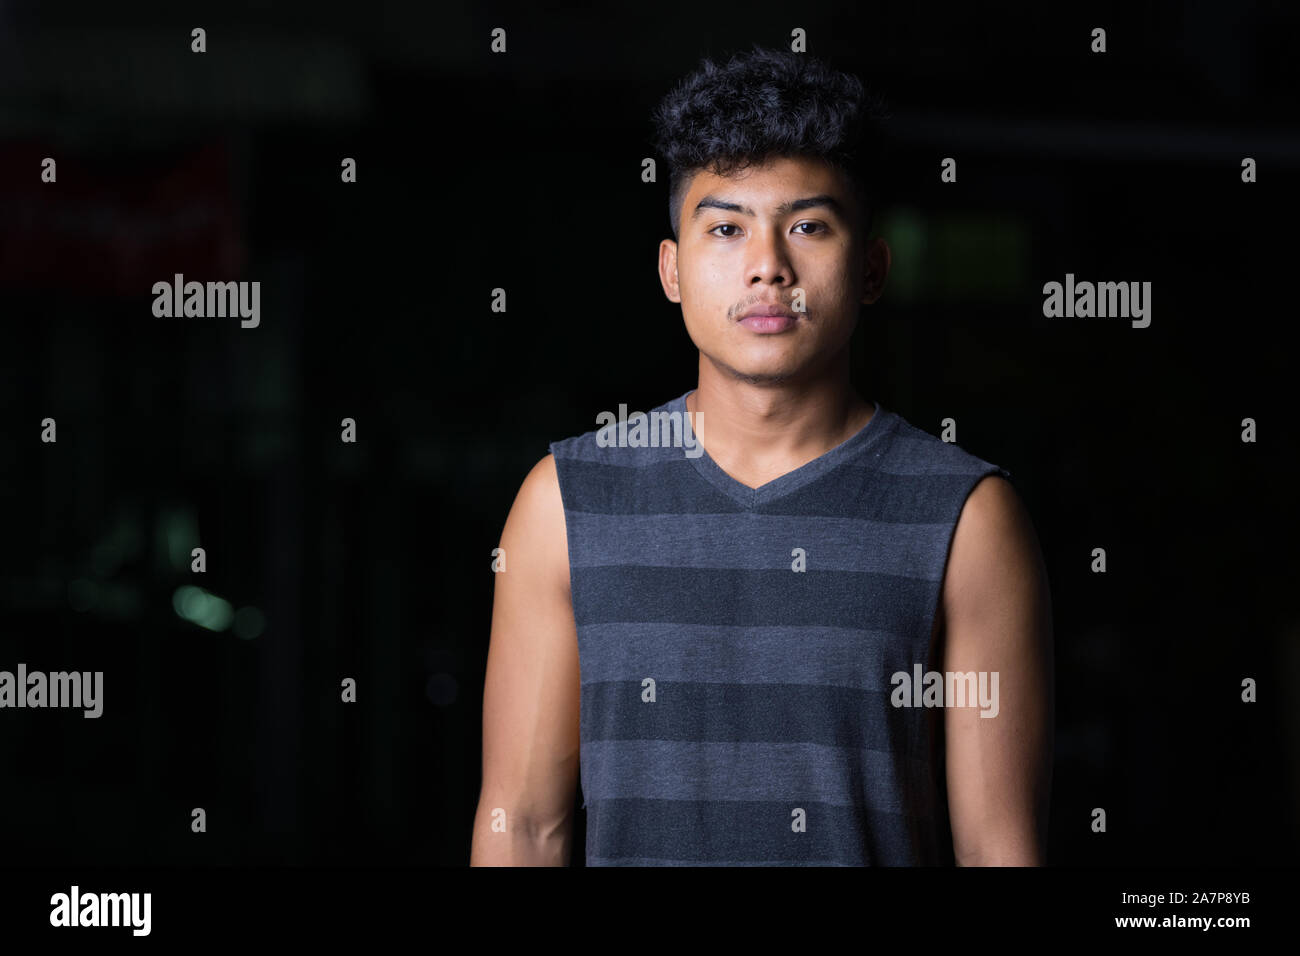 Young Asian man looking at camera at night outdoors Stock Photo